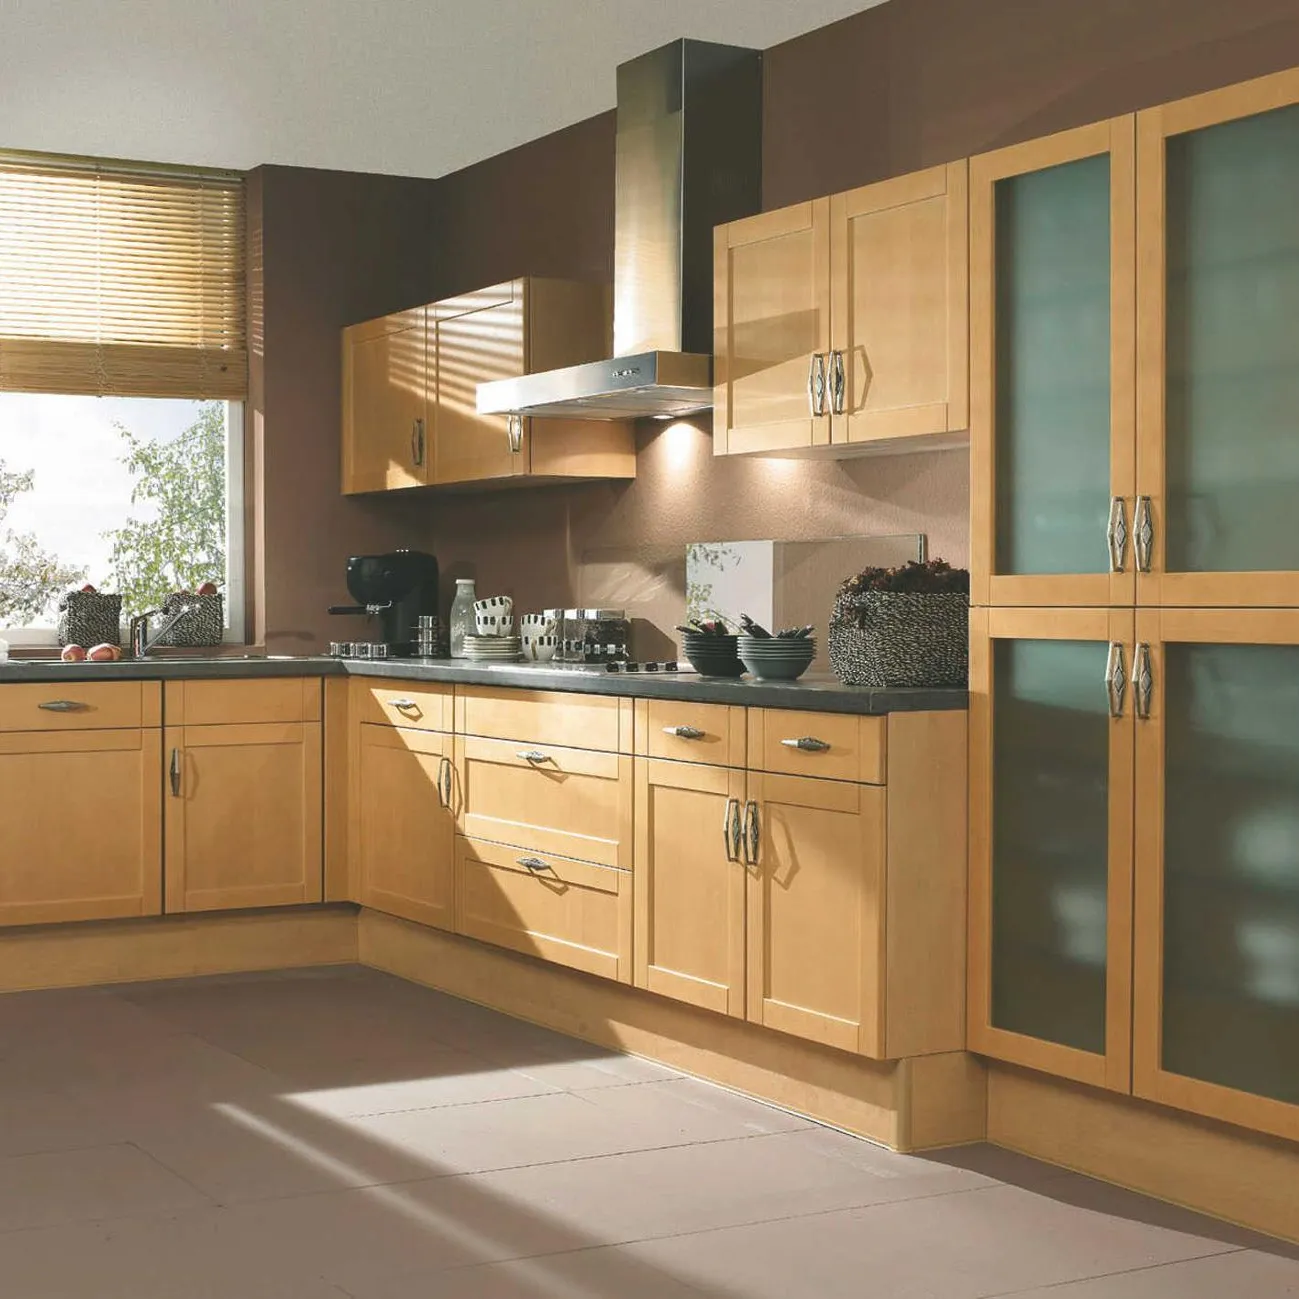 American maple wood shaker door glass door pantry cabinet display kitchen cabinets for sale